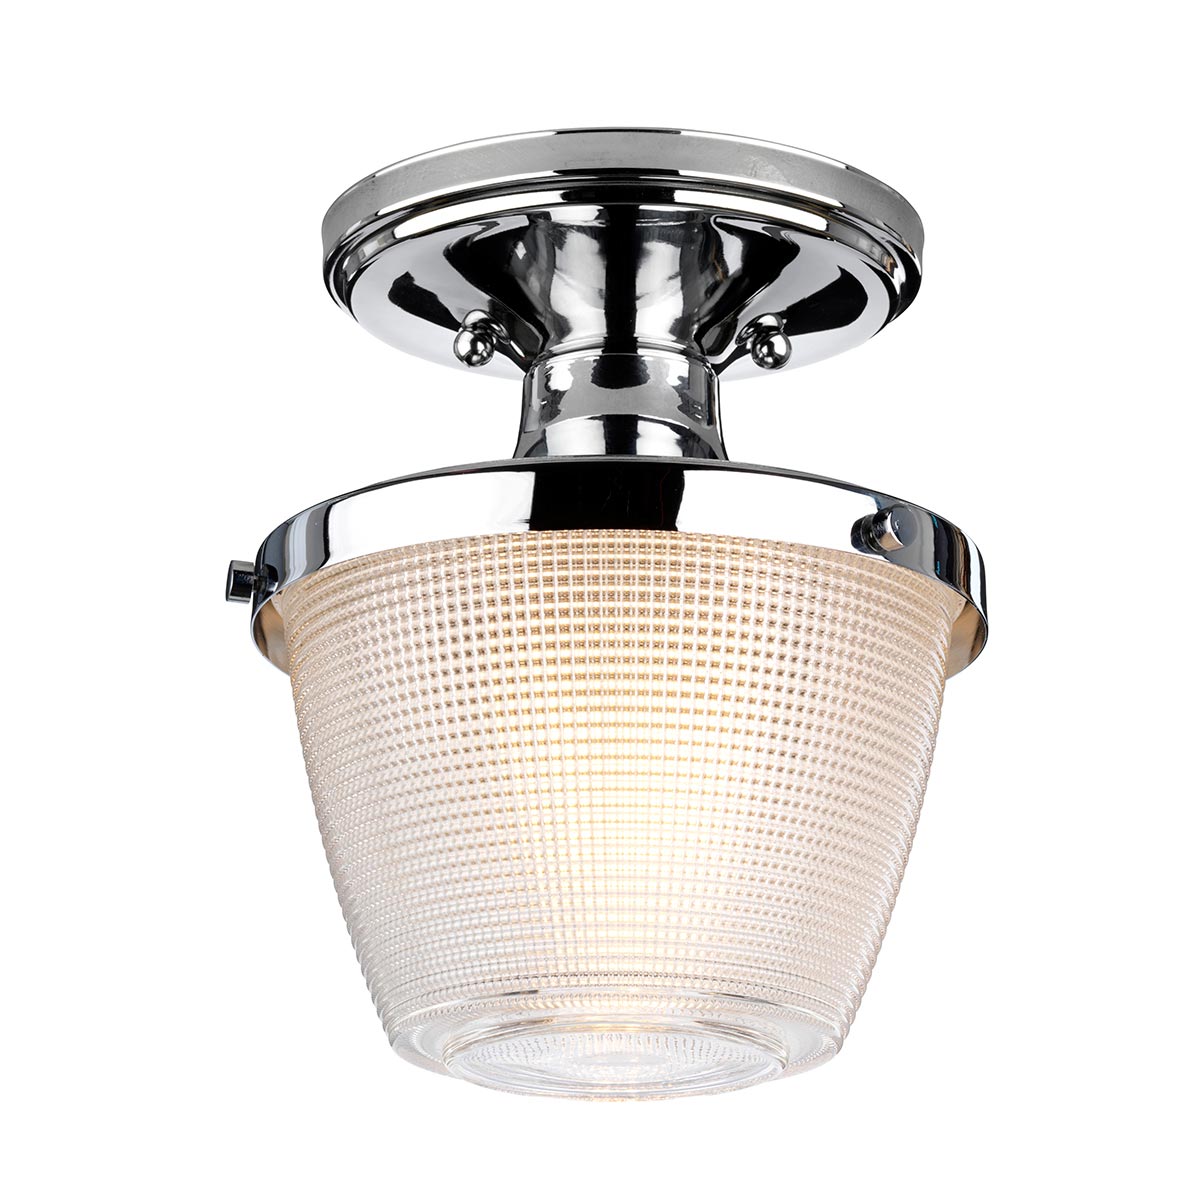 Quoizel Dublin 1 Lamp Semi Flush Bathroom Ceiling Light Chrome